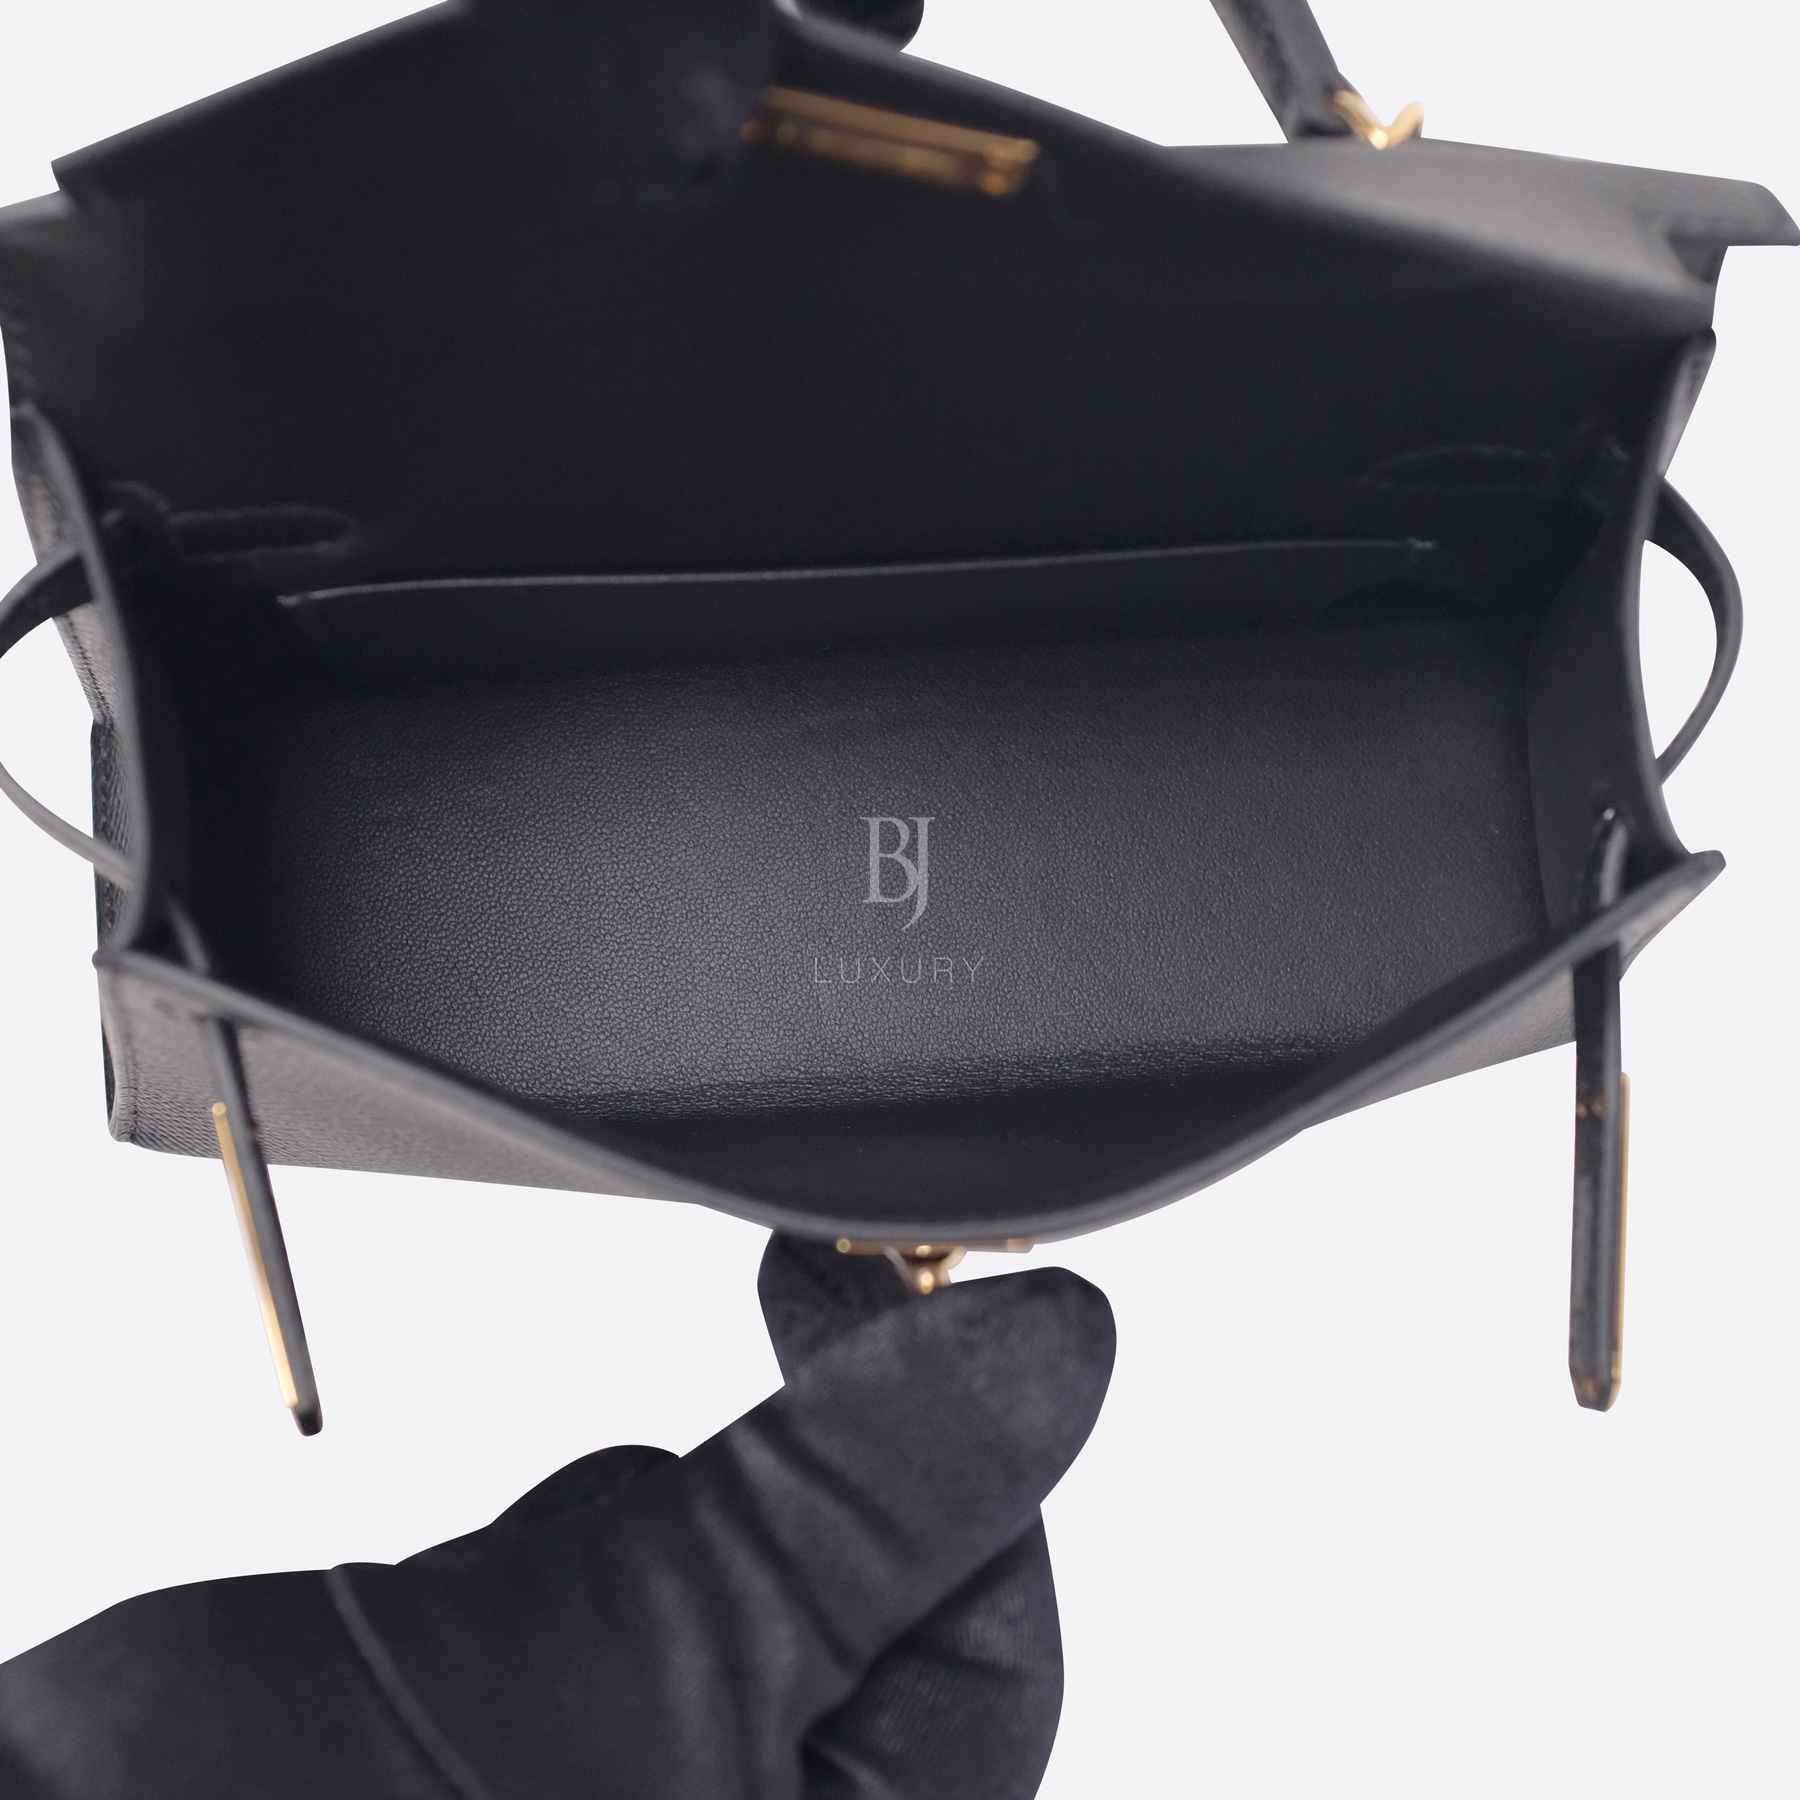 Hermes Kelly Sellier 20 Black Gold Hardware Epsom 19 BJ Luxury.jpg